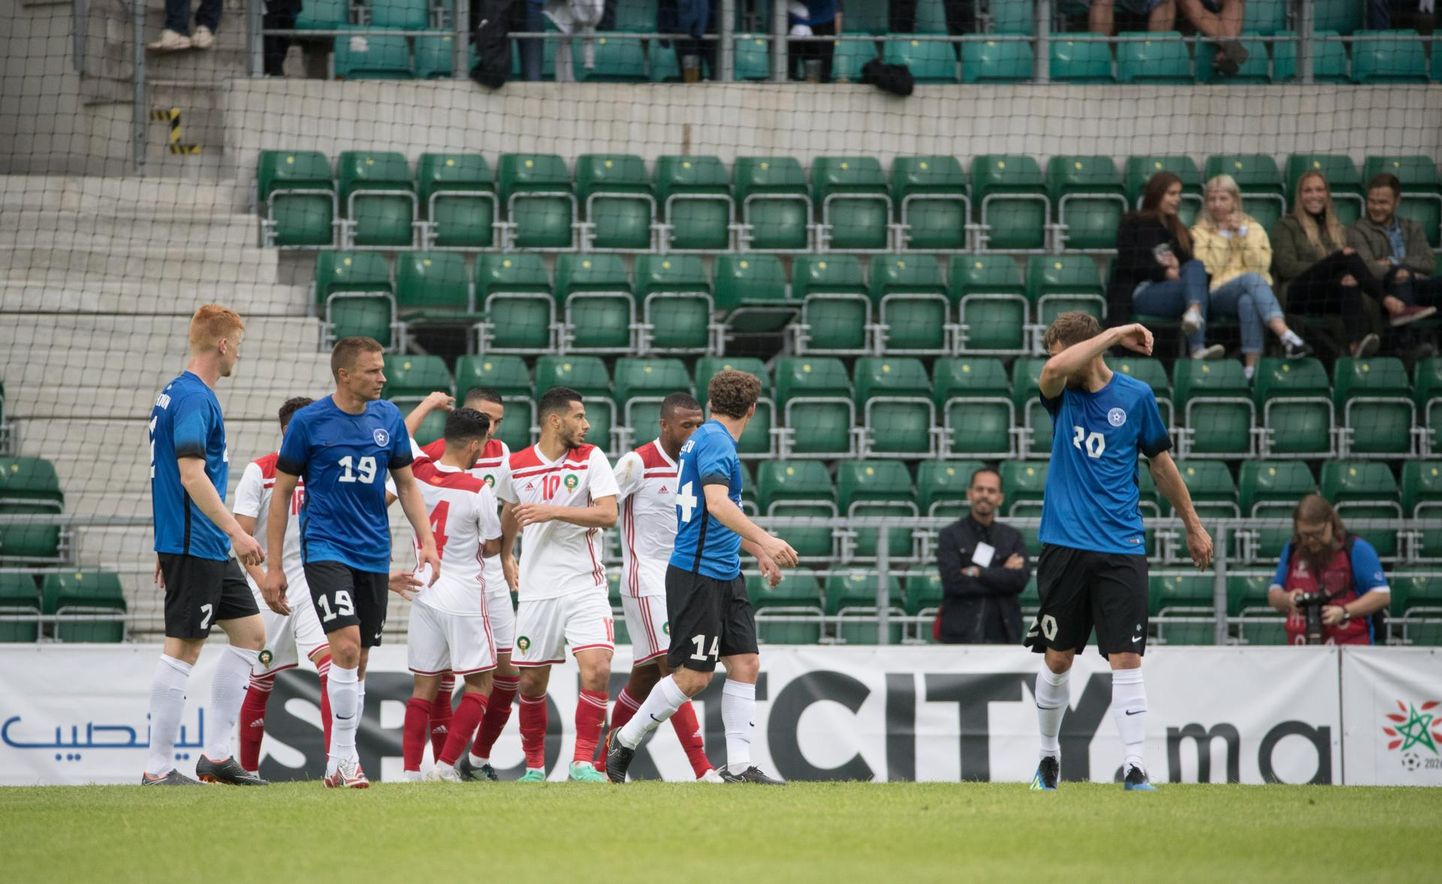 Eesti kaotas 1:3 Marokole, kolme kuu pärast tuleb Rahvuste liiga avamänguks Lillekülla Kreeka. FOTO: Tairo Lutter